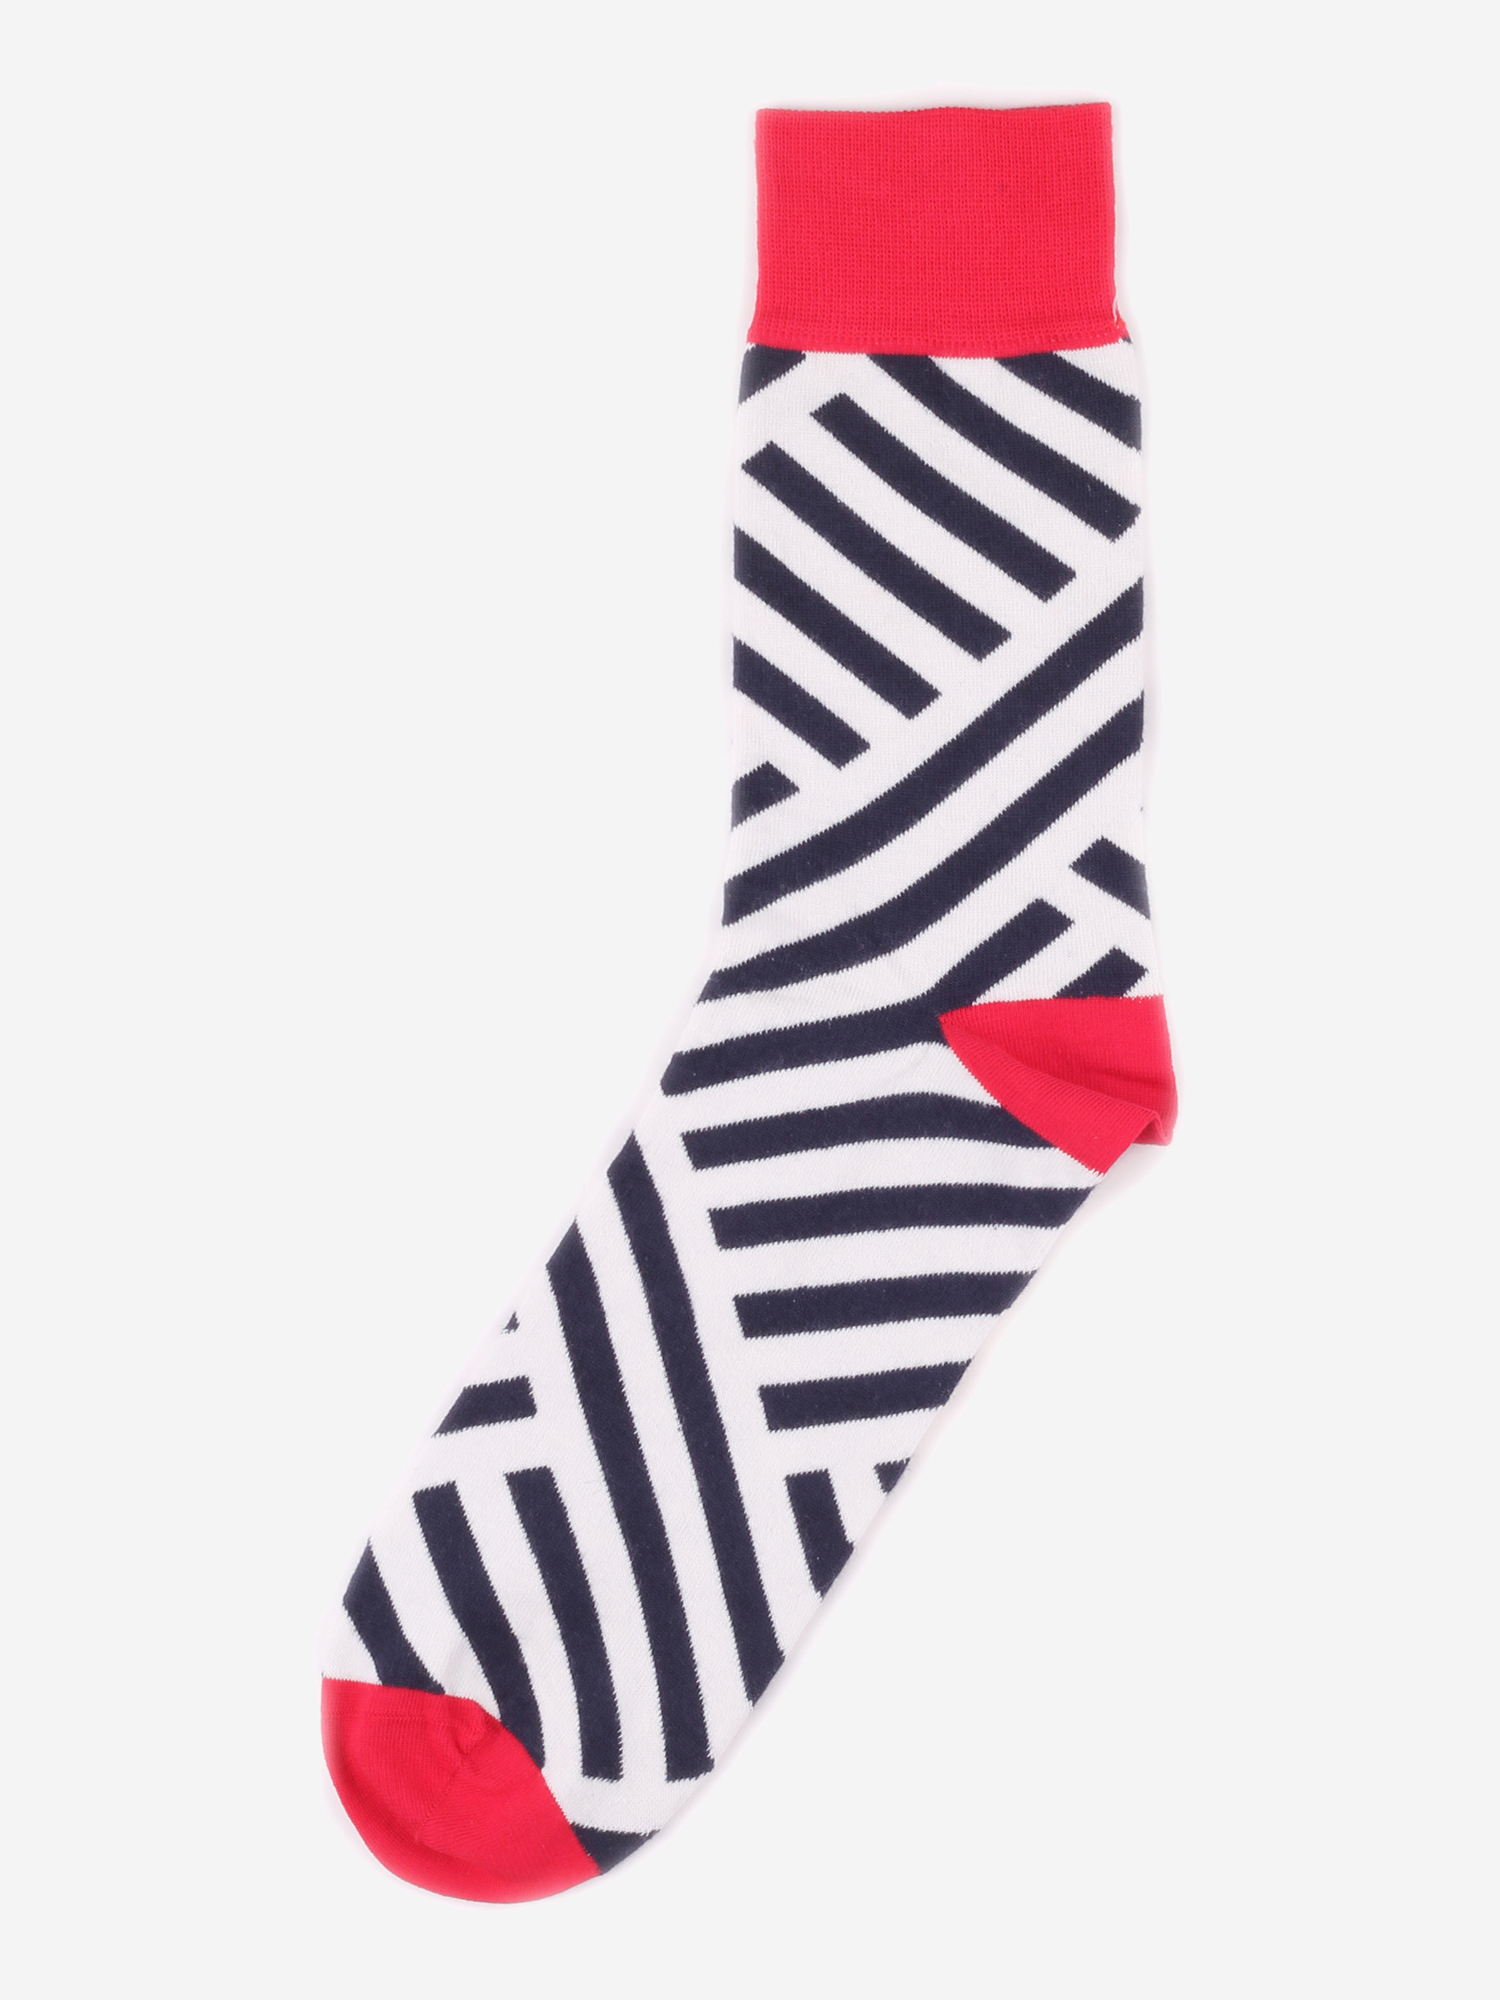 Дизайнерские носки Burning Heels - Diagonal Stripes - Red/Black, Красный dig your heels in